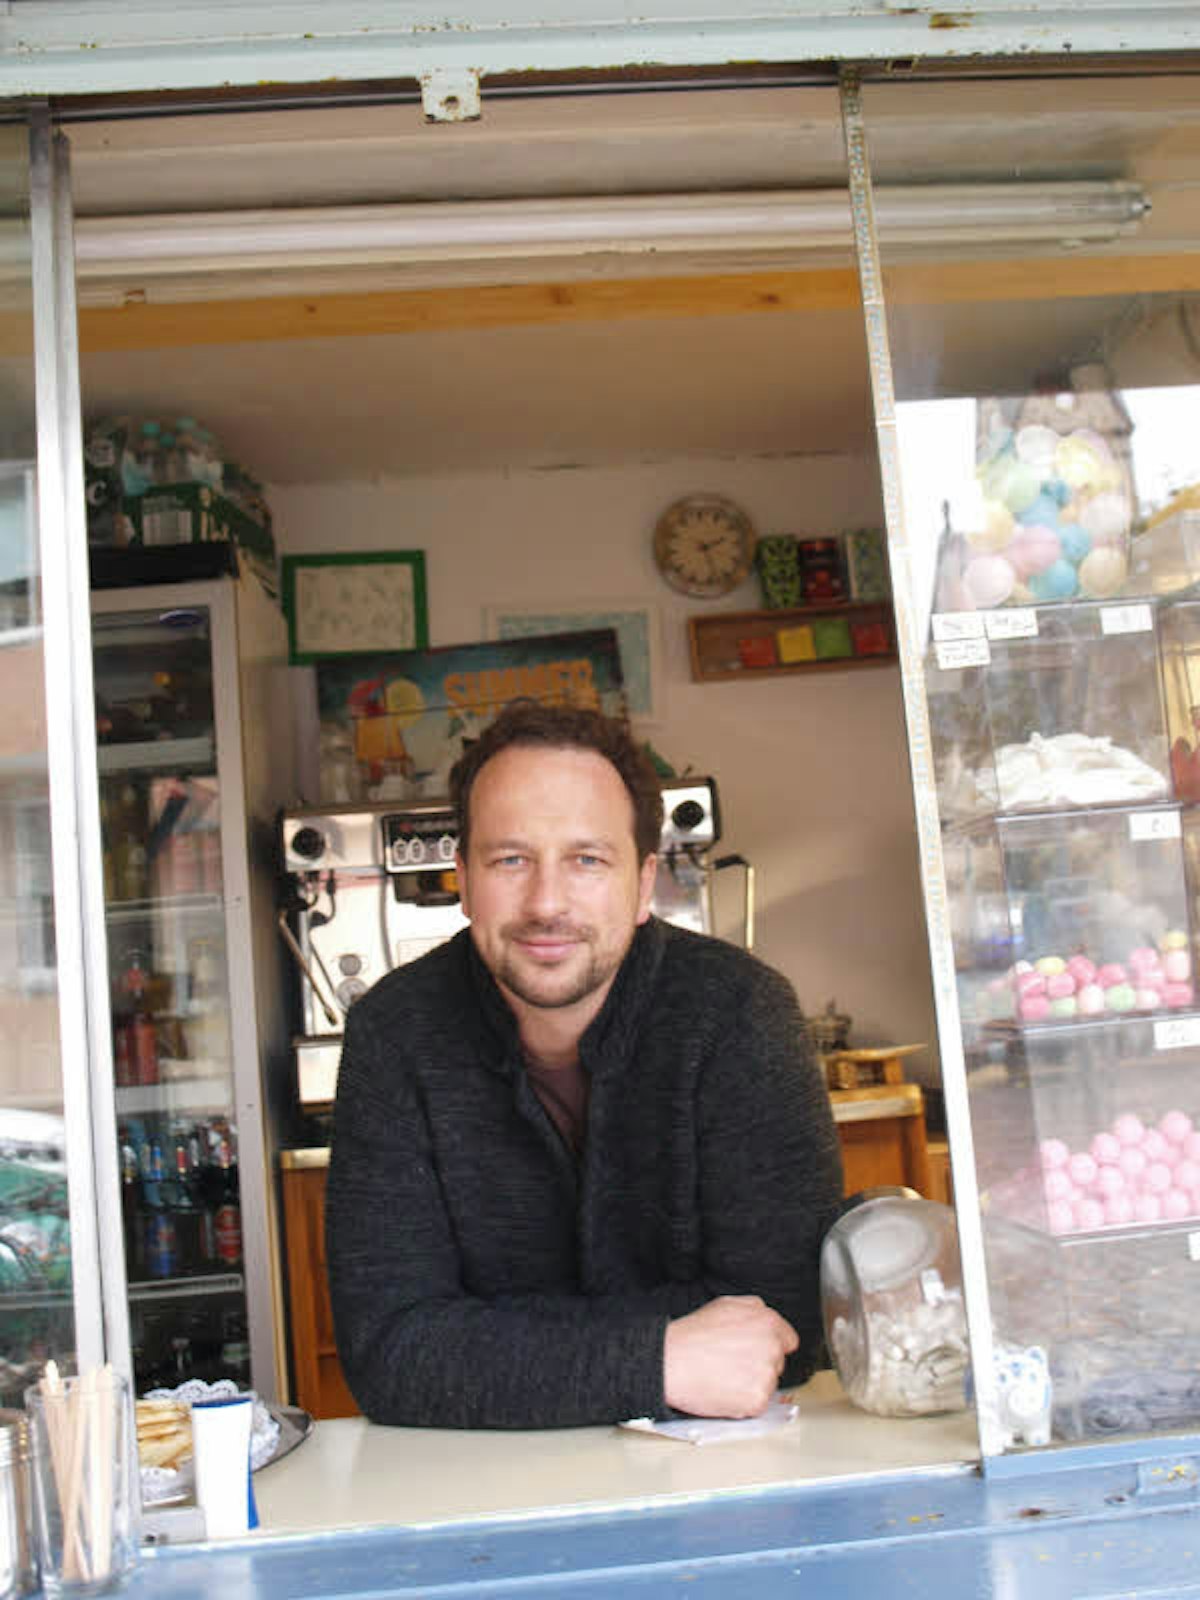 Martin Gubelt plaudert am Büdchenfenster mit Kunden.